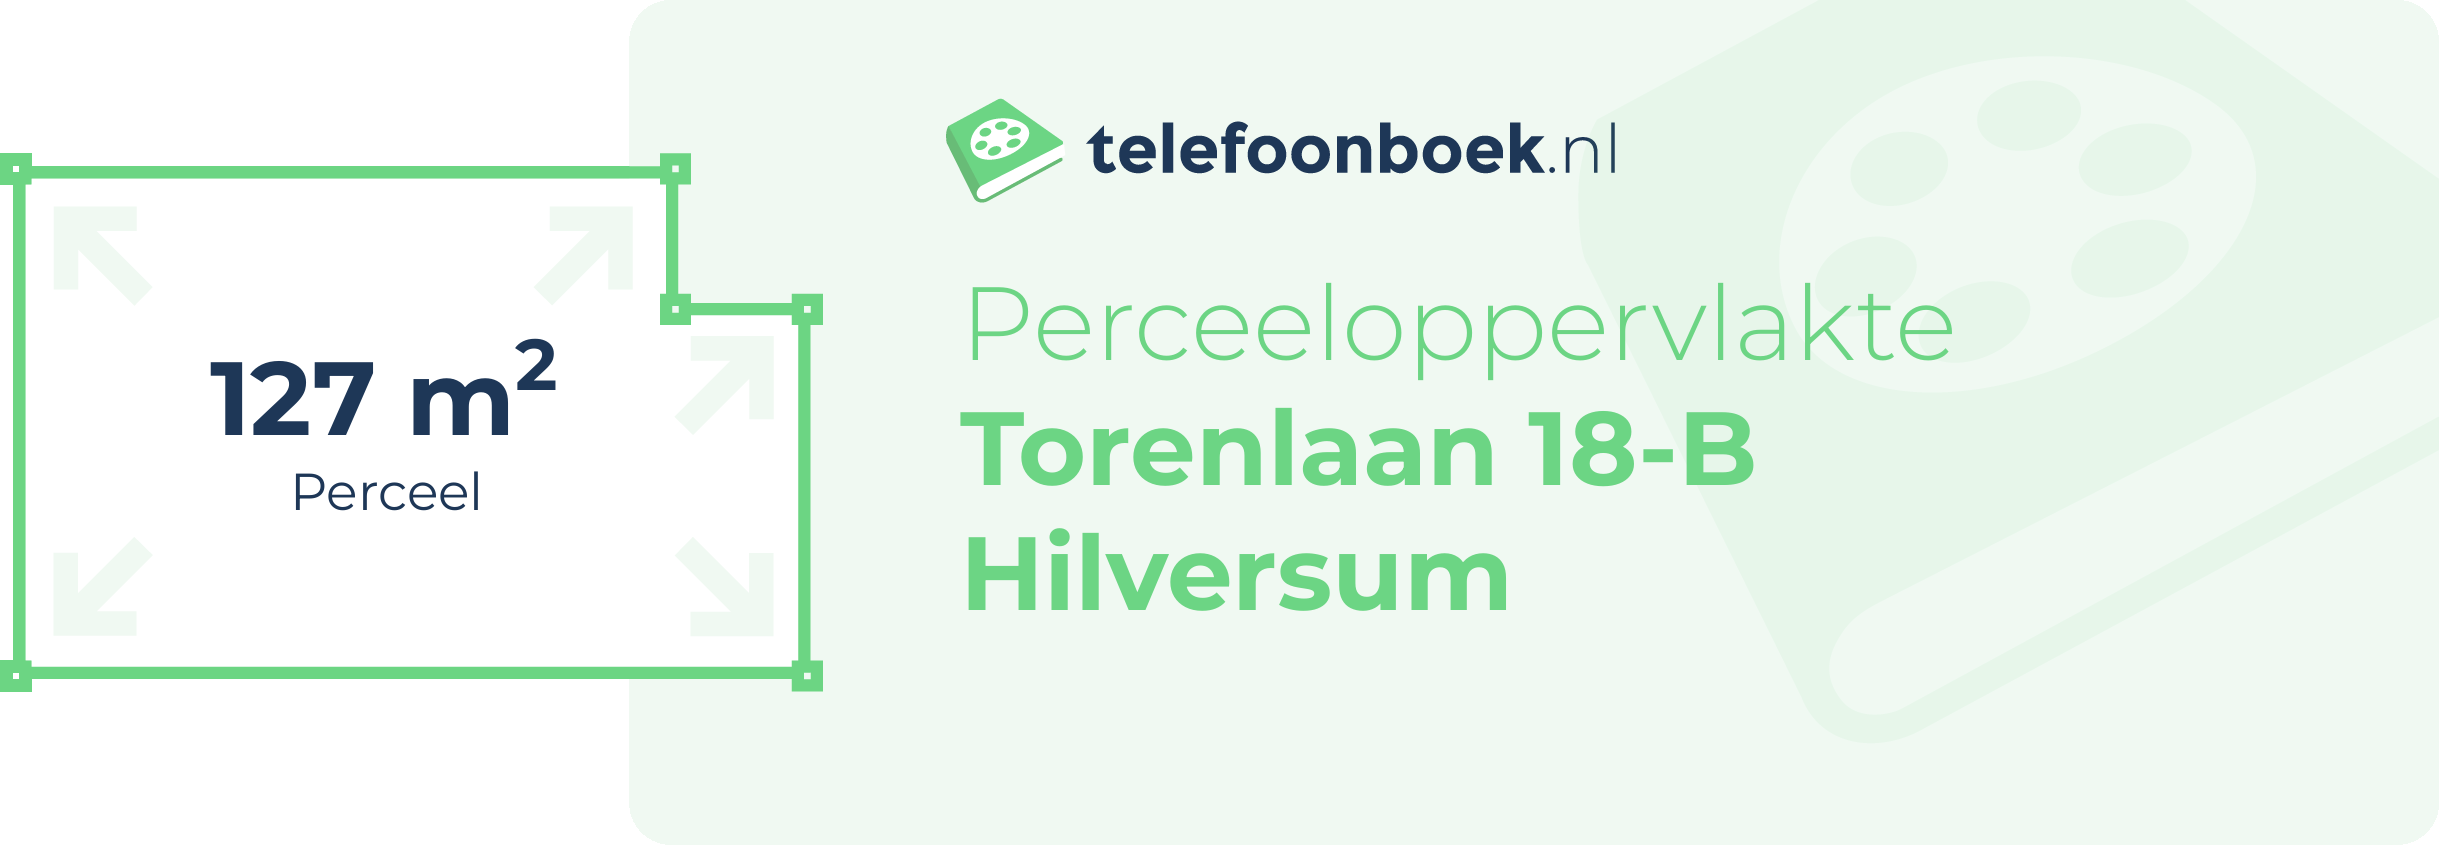 Perceeloppervlakte Torenlaan 18-B Hilversum